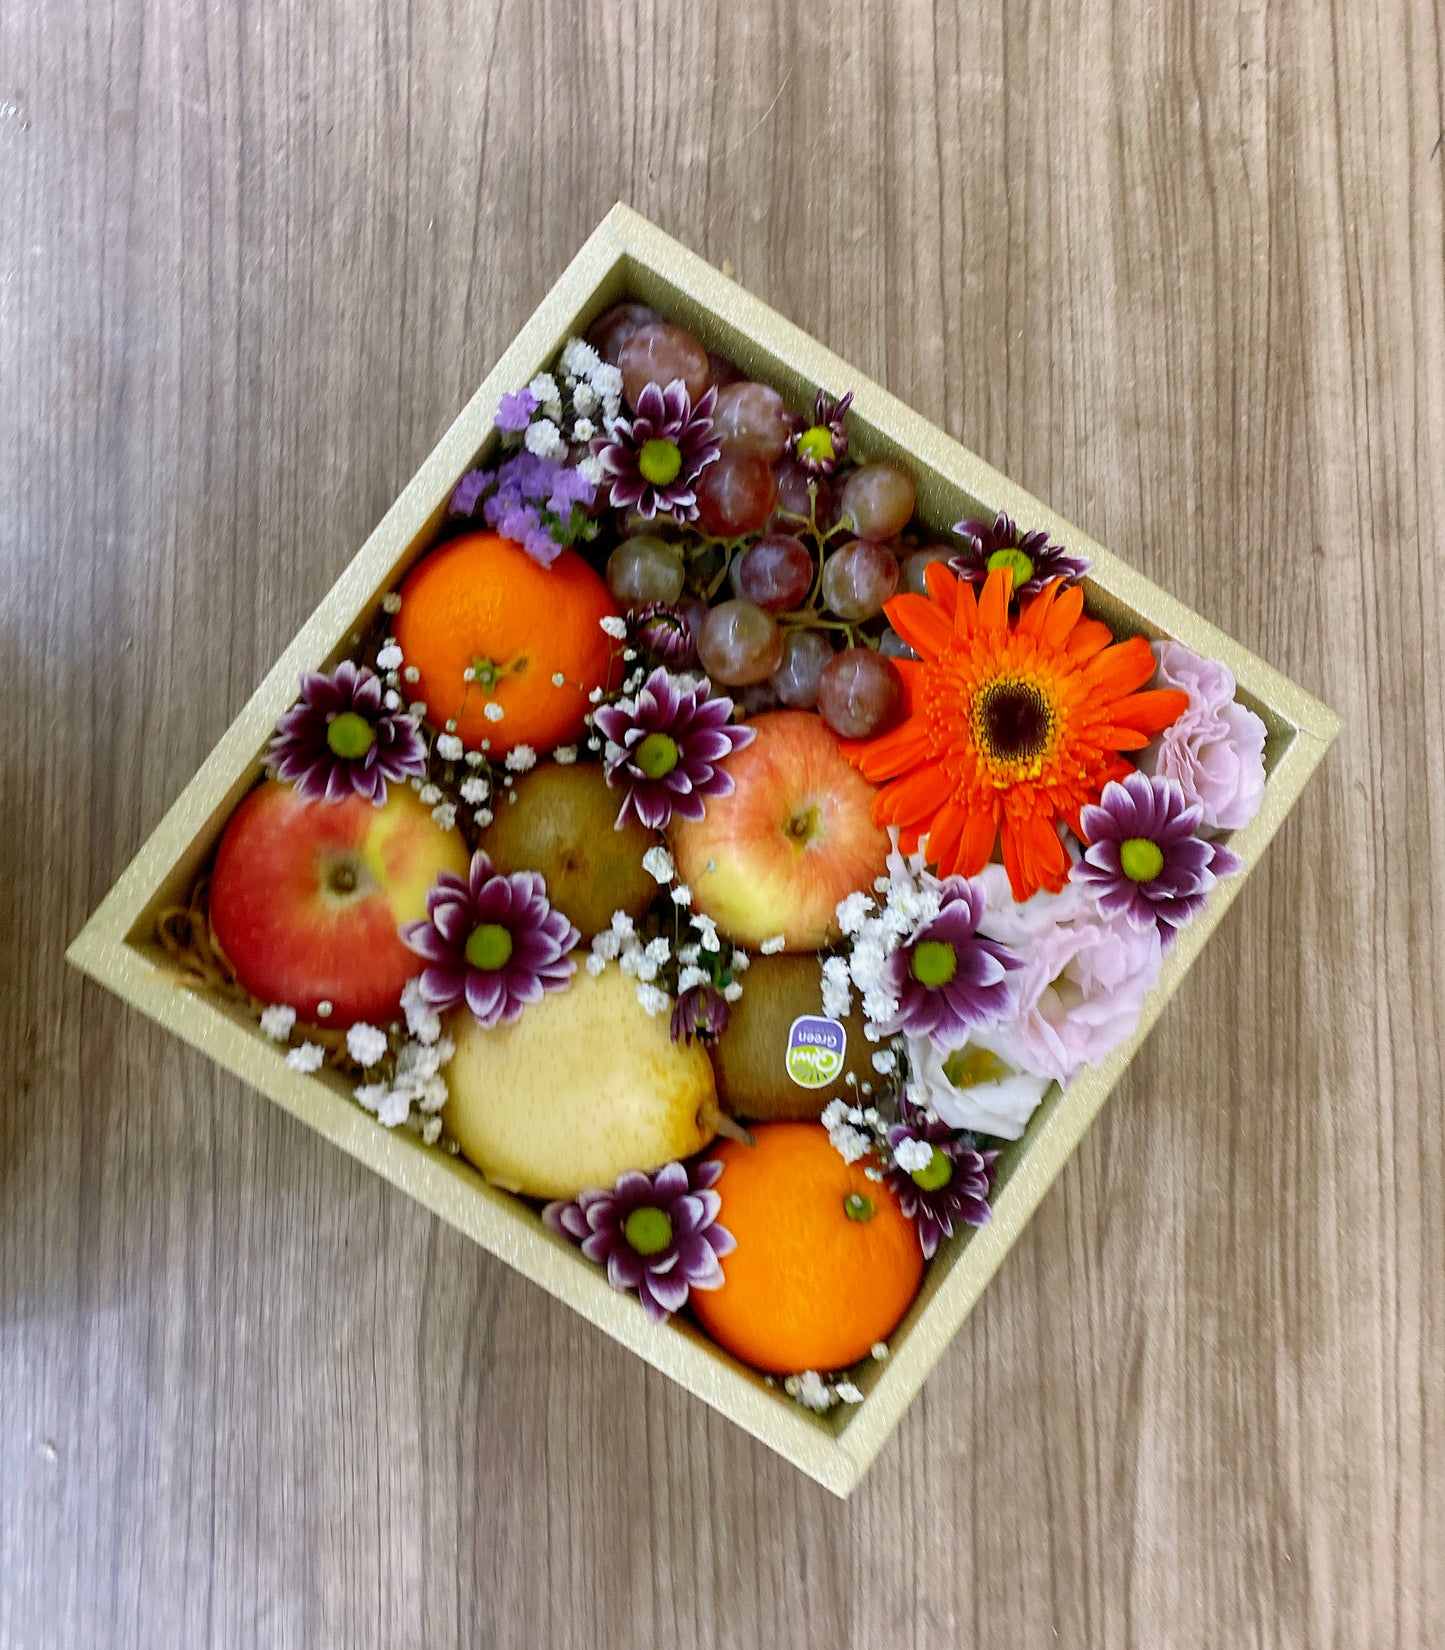 Fruit & Flower Box 20 (RM 80.00)